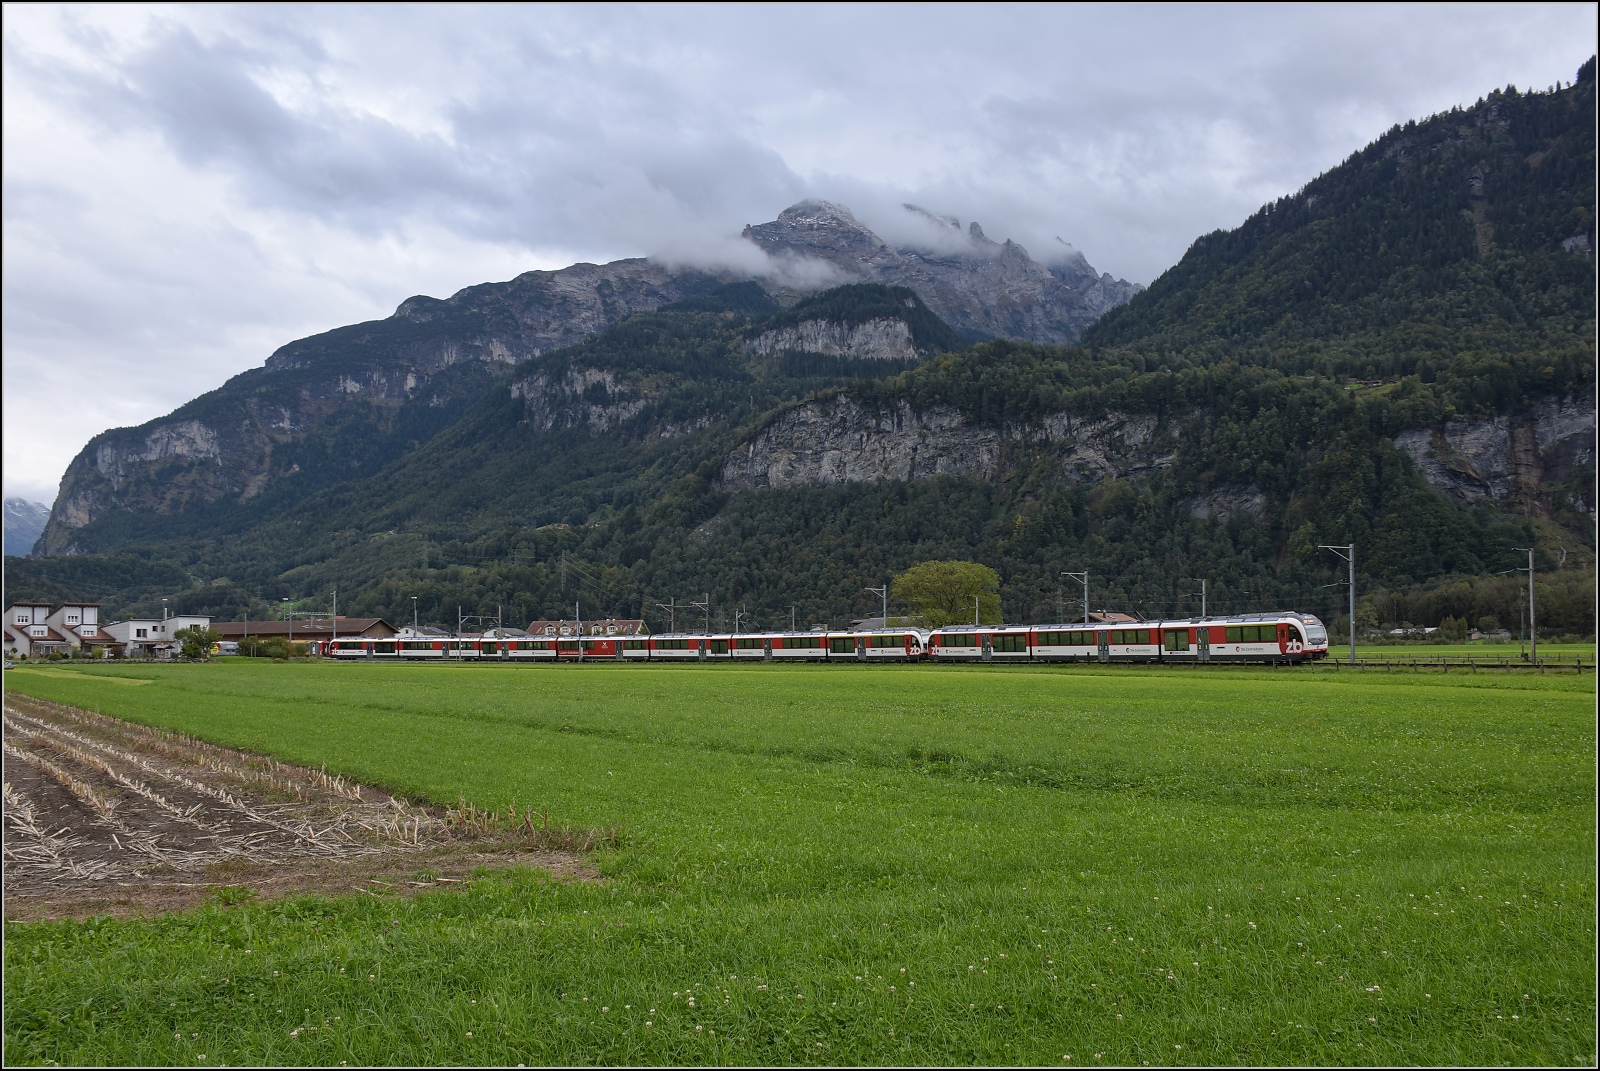 Adler ABeh 150 und Fink ABeh 160 blieben bei der Vorbeifahrt Richtung Luzern unbekannt. Meiringen, Oktober 2019.